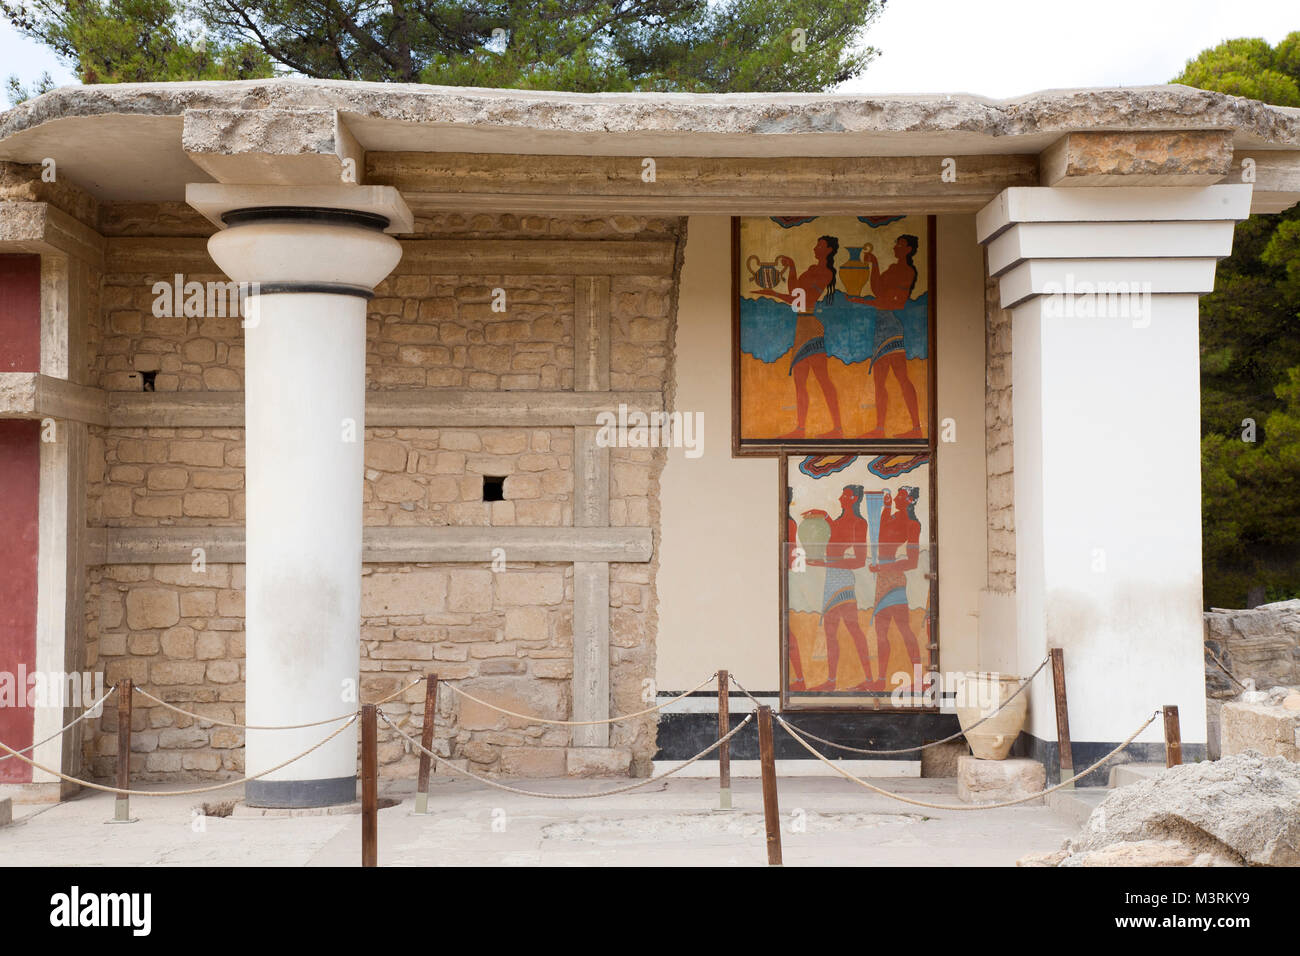 South propylaeum, Cup bearer fresco and Procession fresco, Knossos palace archaeological site, Crete island, Greece, Europe Stock Photo